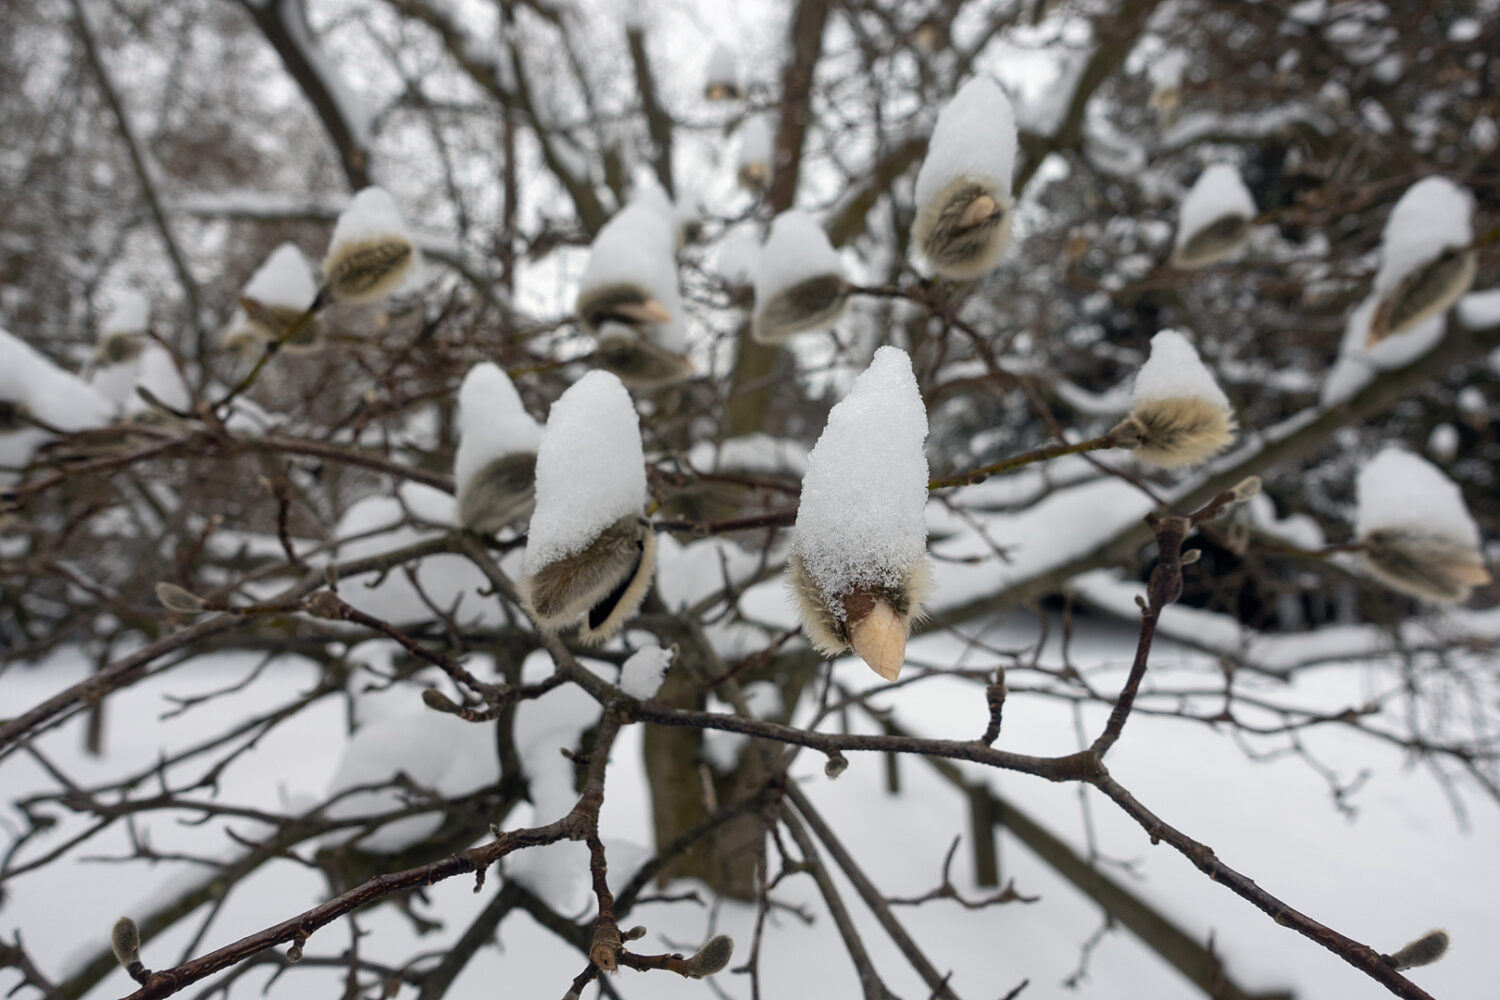 Magnolia under snow